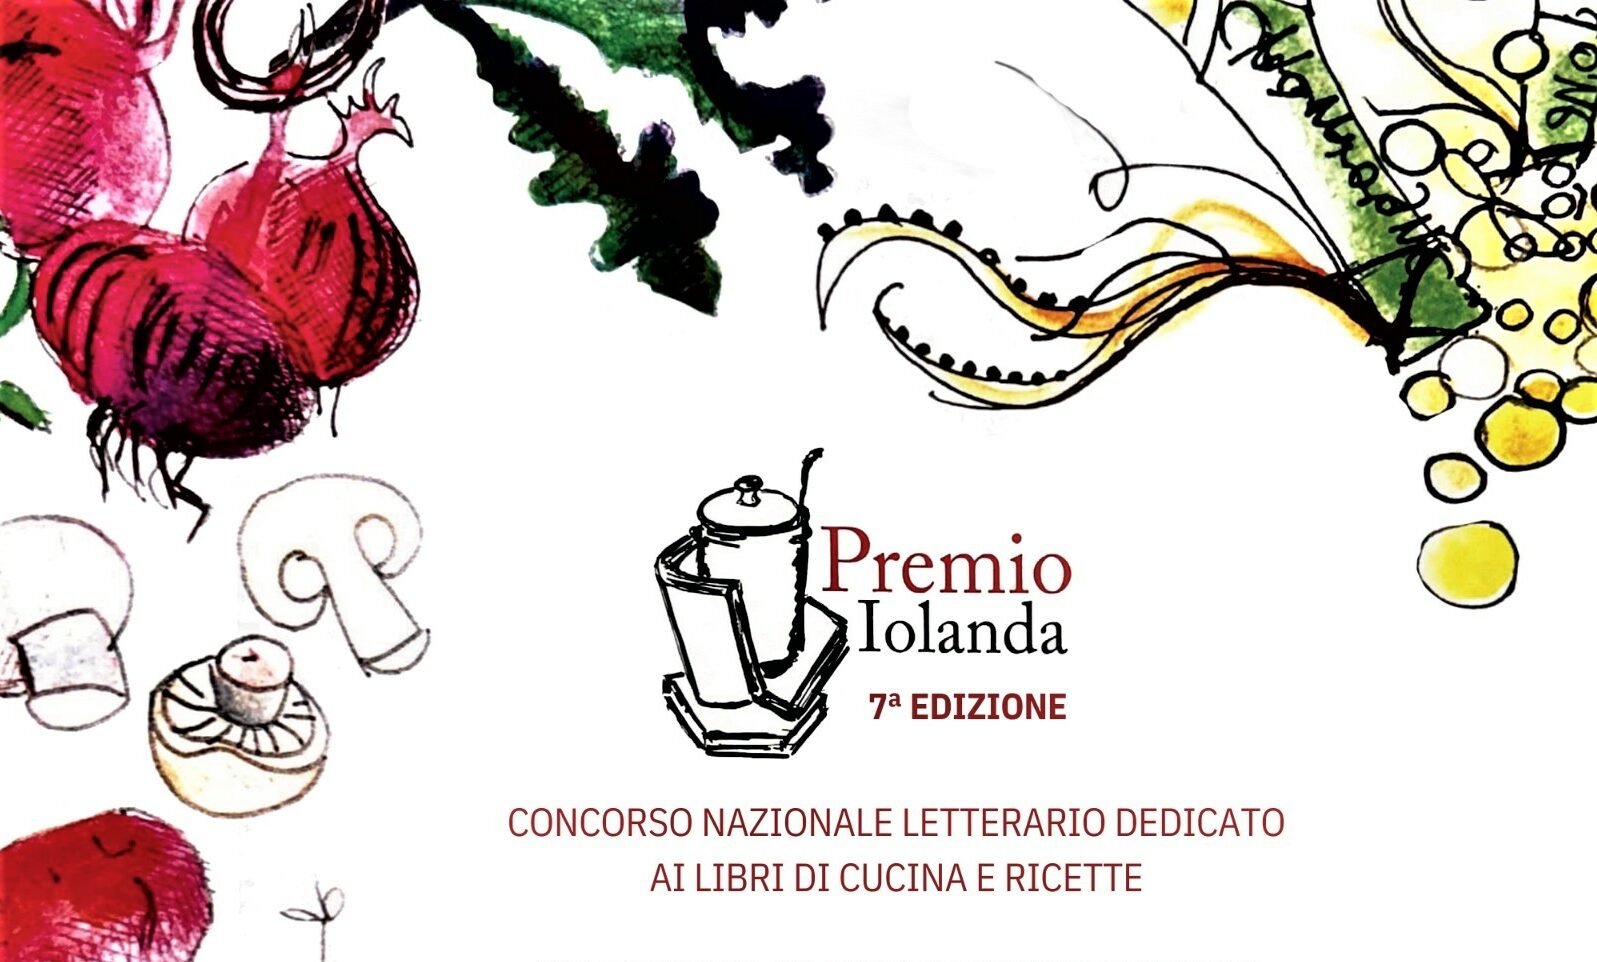 Premio Iolanda, concorso nazionale letterario dedicato ai libri di cucina e ricette